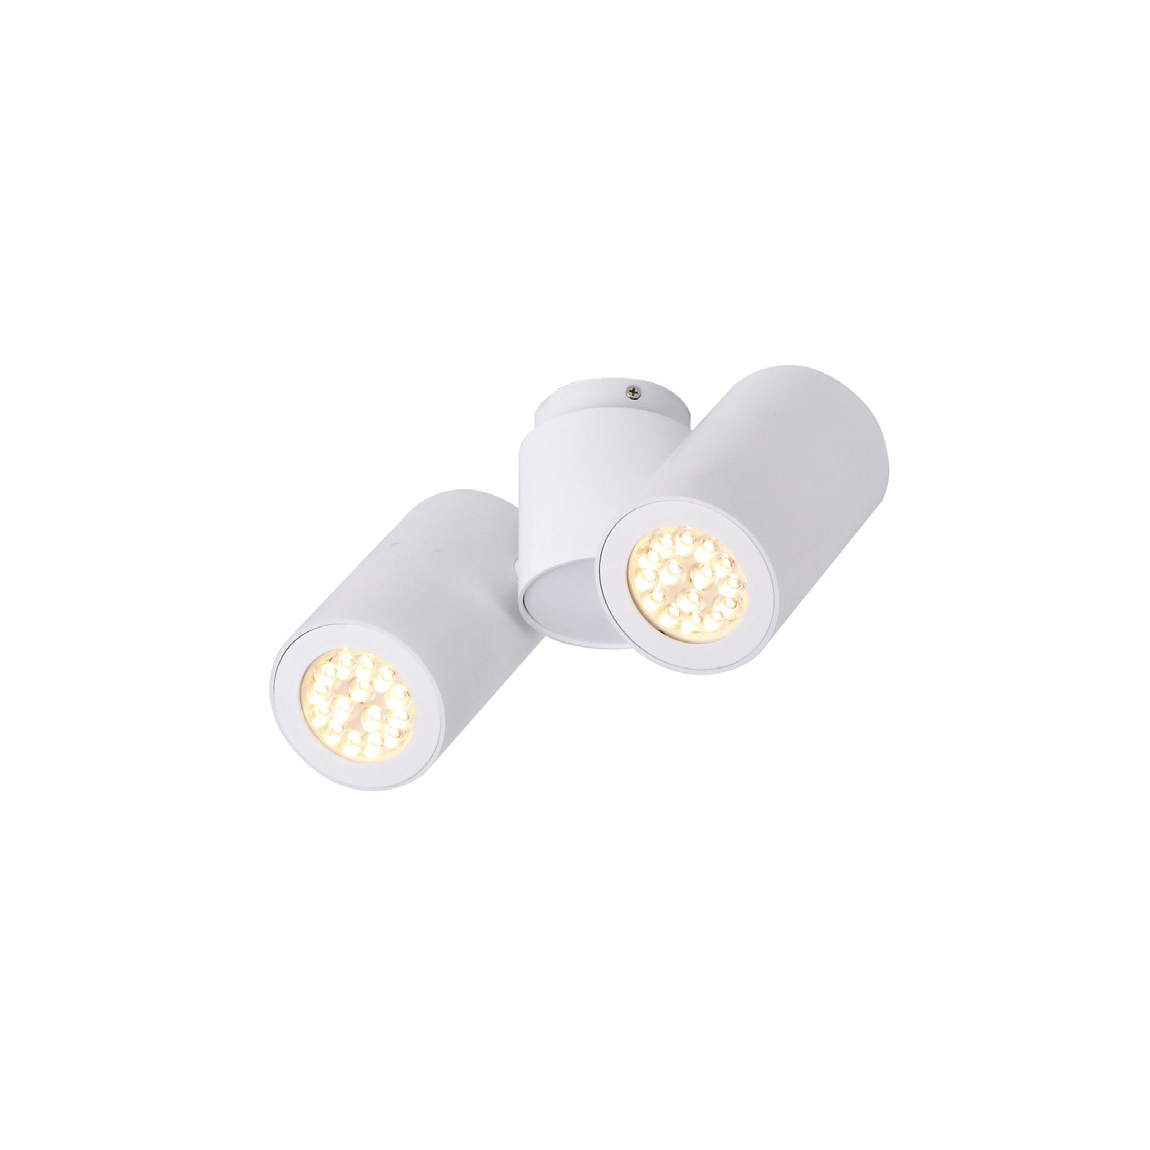 MAXlight Barro II C0113 Plafon lampa sufitowa 2x50W GU10 biały - wysyłka w 24h